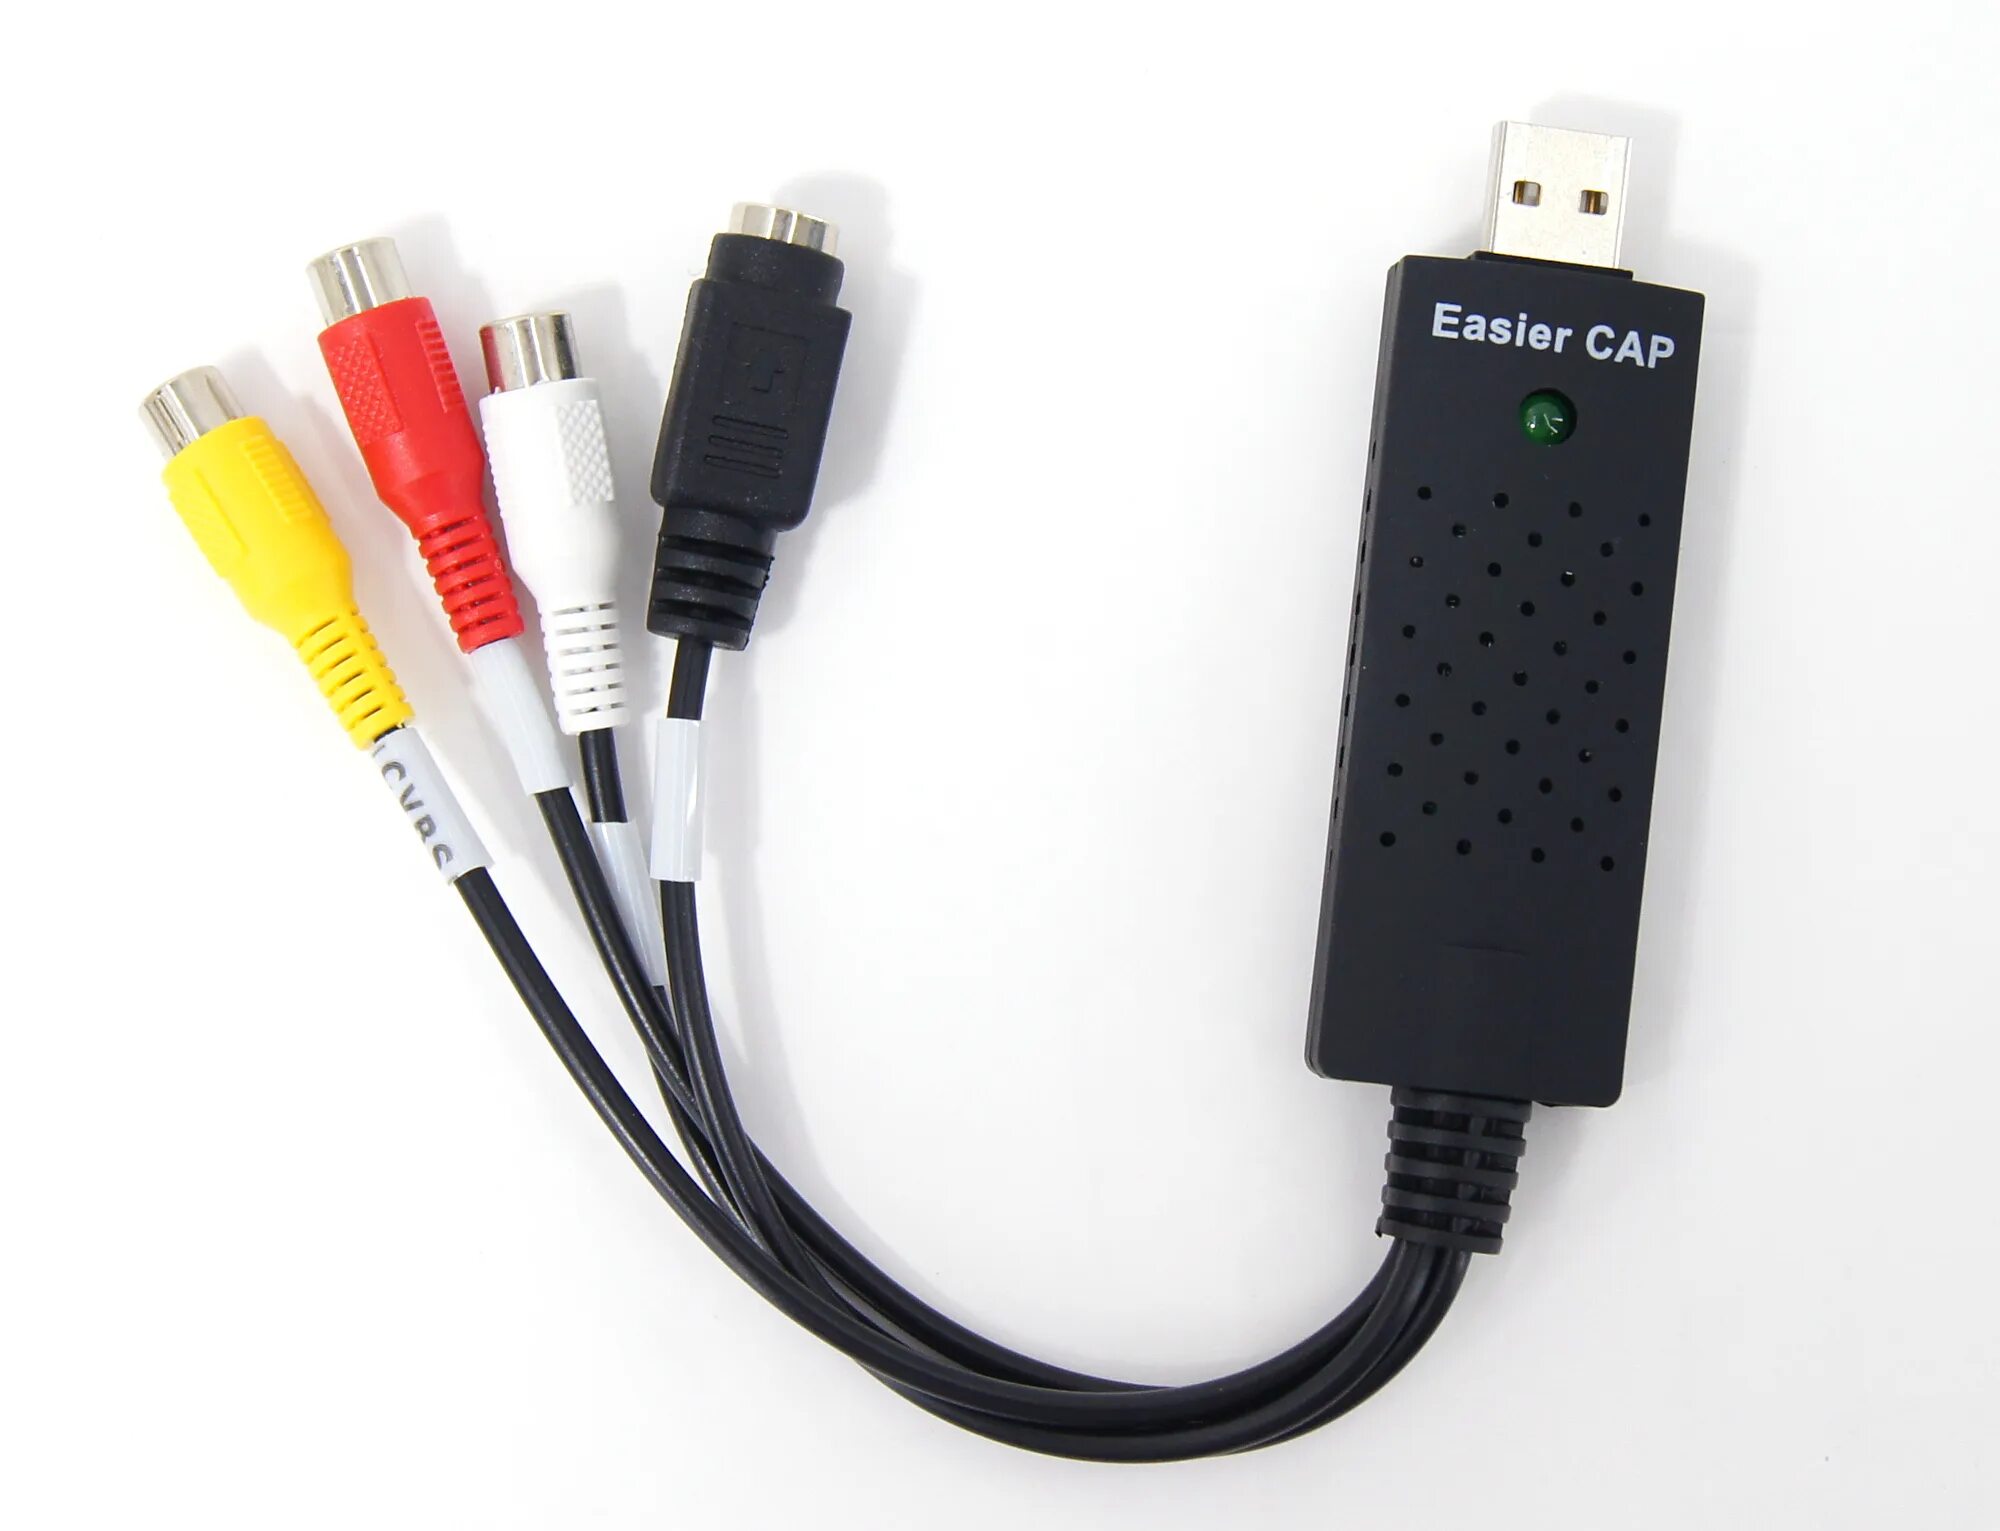 Easy cap 2.0. EASYCAP. Easier cap. VIDEODVR easier cap. Easier cap 2022.